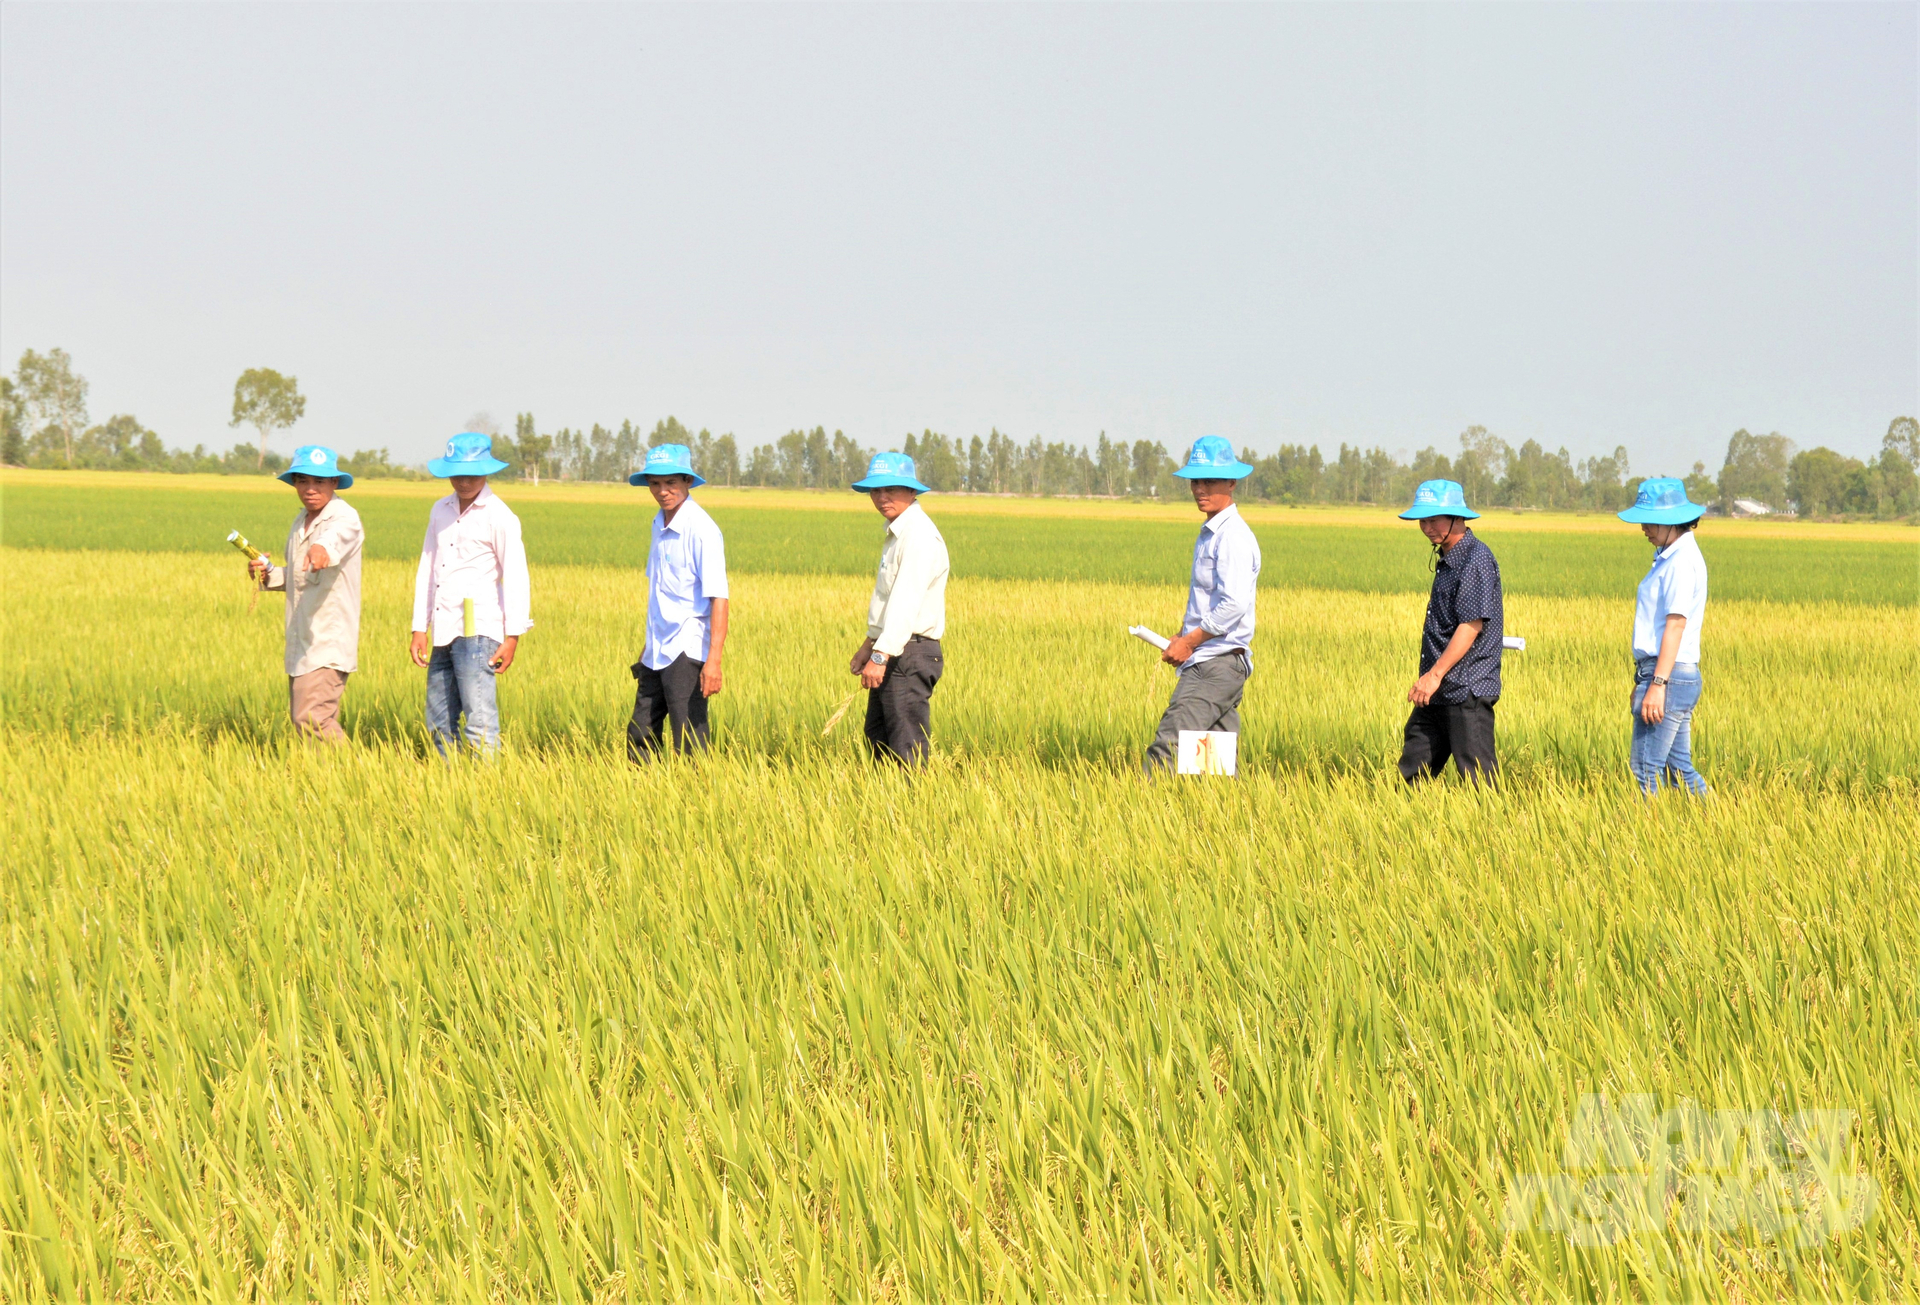 Dấu ấn từ Dự án VnSAT vẫn còn in đậm trên những cánh đồng lúa bạt ngàn của tỉnh Kiên Giang, không chỉ là những công trình hạ tầng được đầu tư, mà quy trình sản xuất lúa tiên tiến, giảm phát thải vẫn được bà con nông dân tiếp tục duy trì, mang lại hiệu quả thiết thực. Ảnh: Trung Chánh.